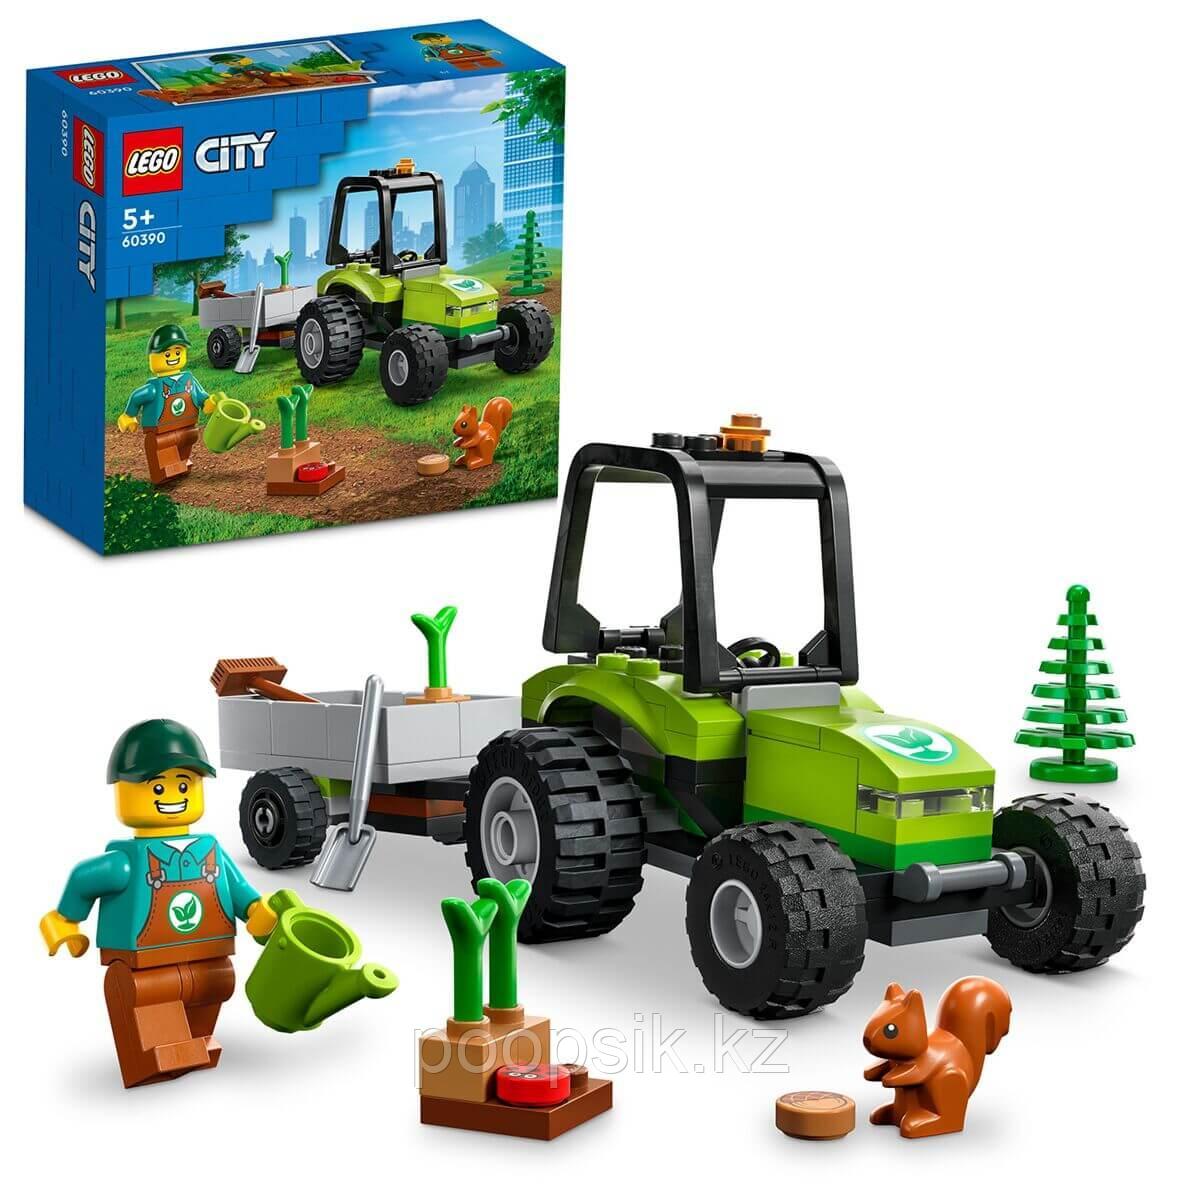 Lego City Парковый трактор 60390